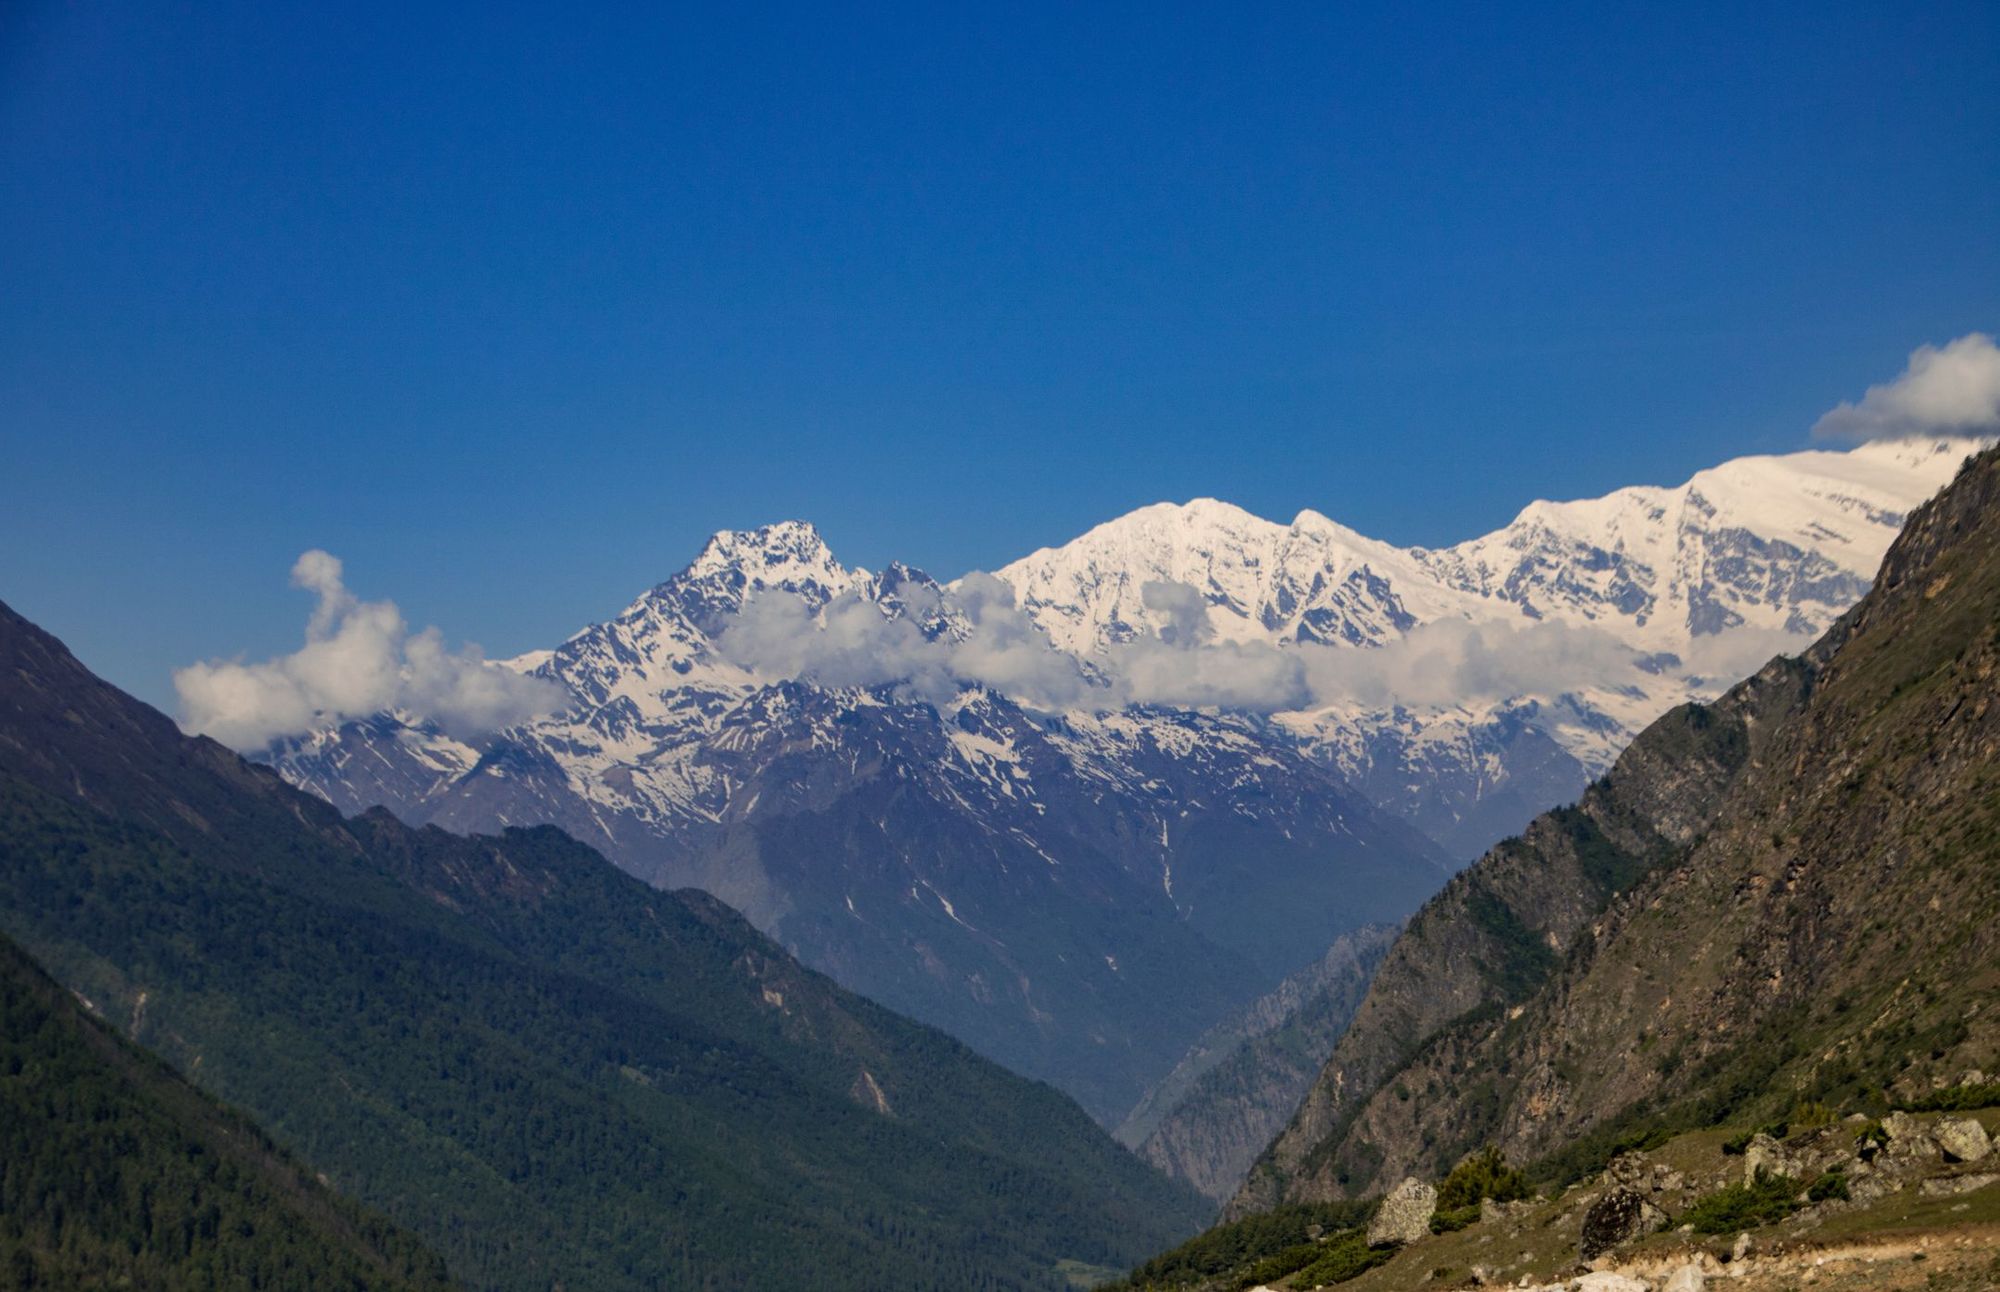 Ganesh Himal Mountain, Nepal.